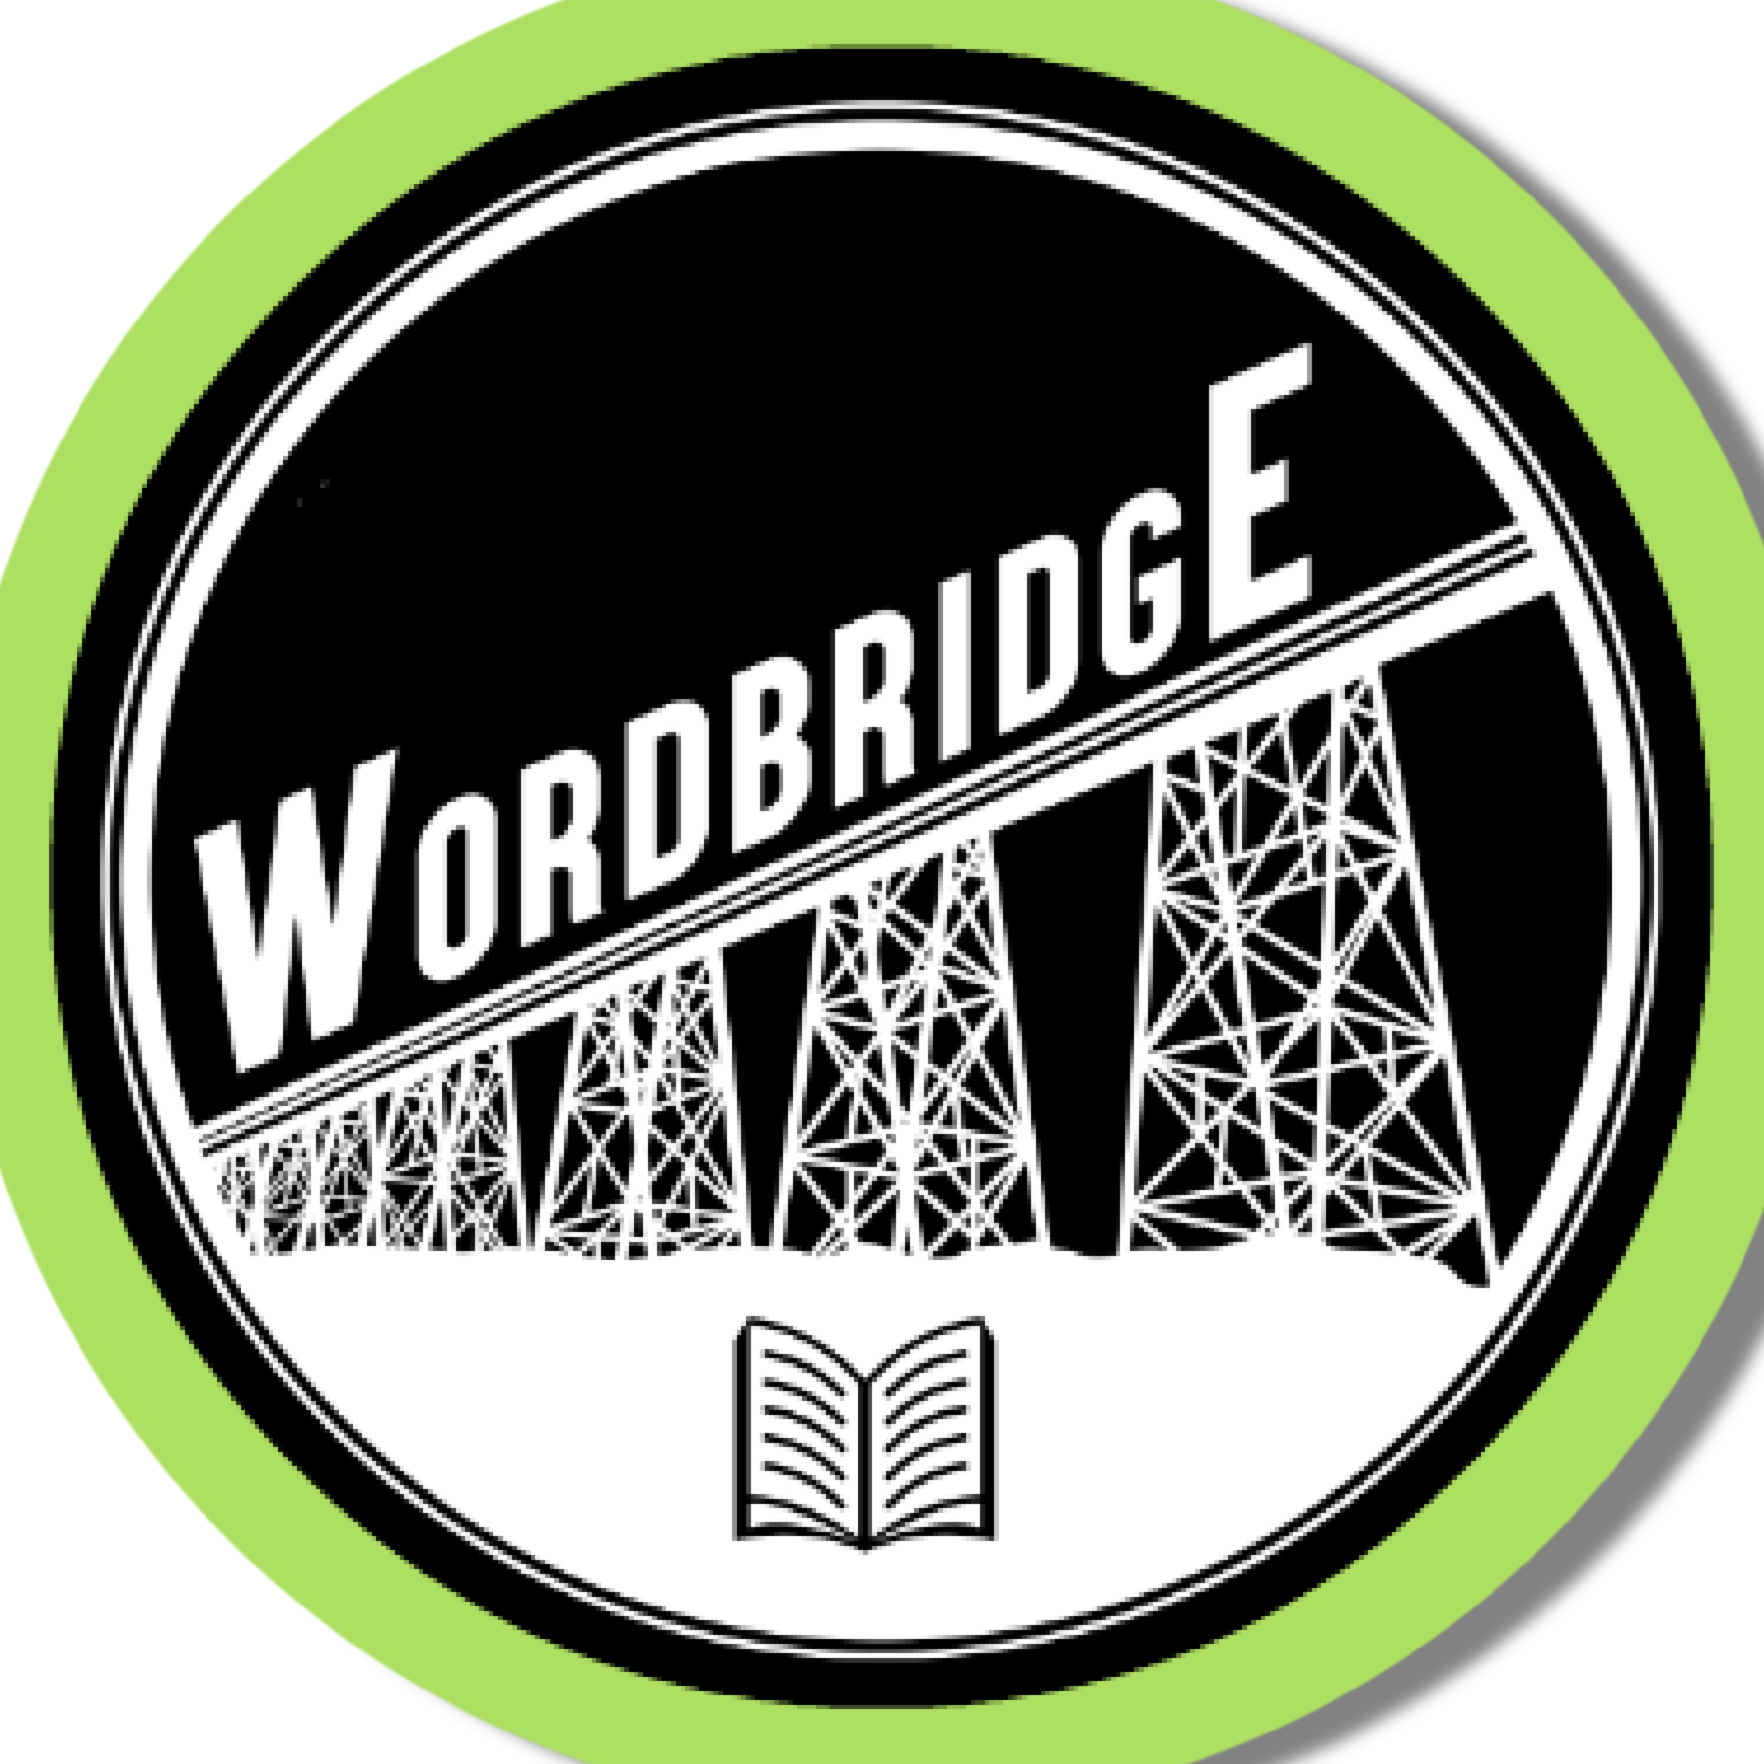 Wordbridge